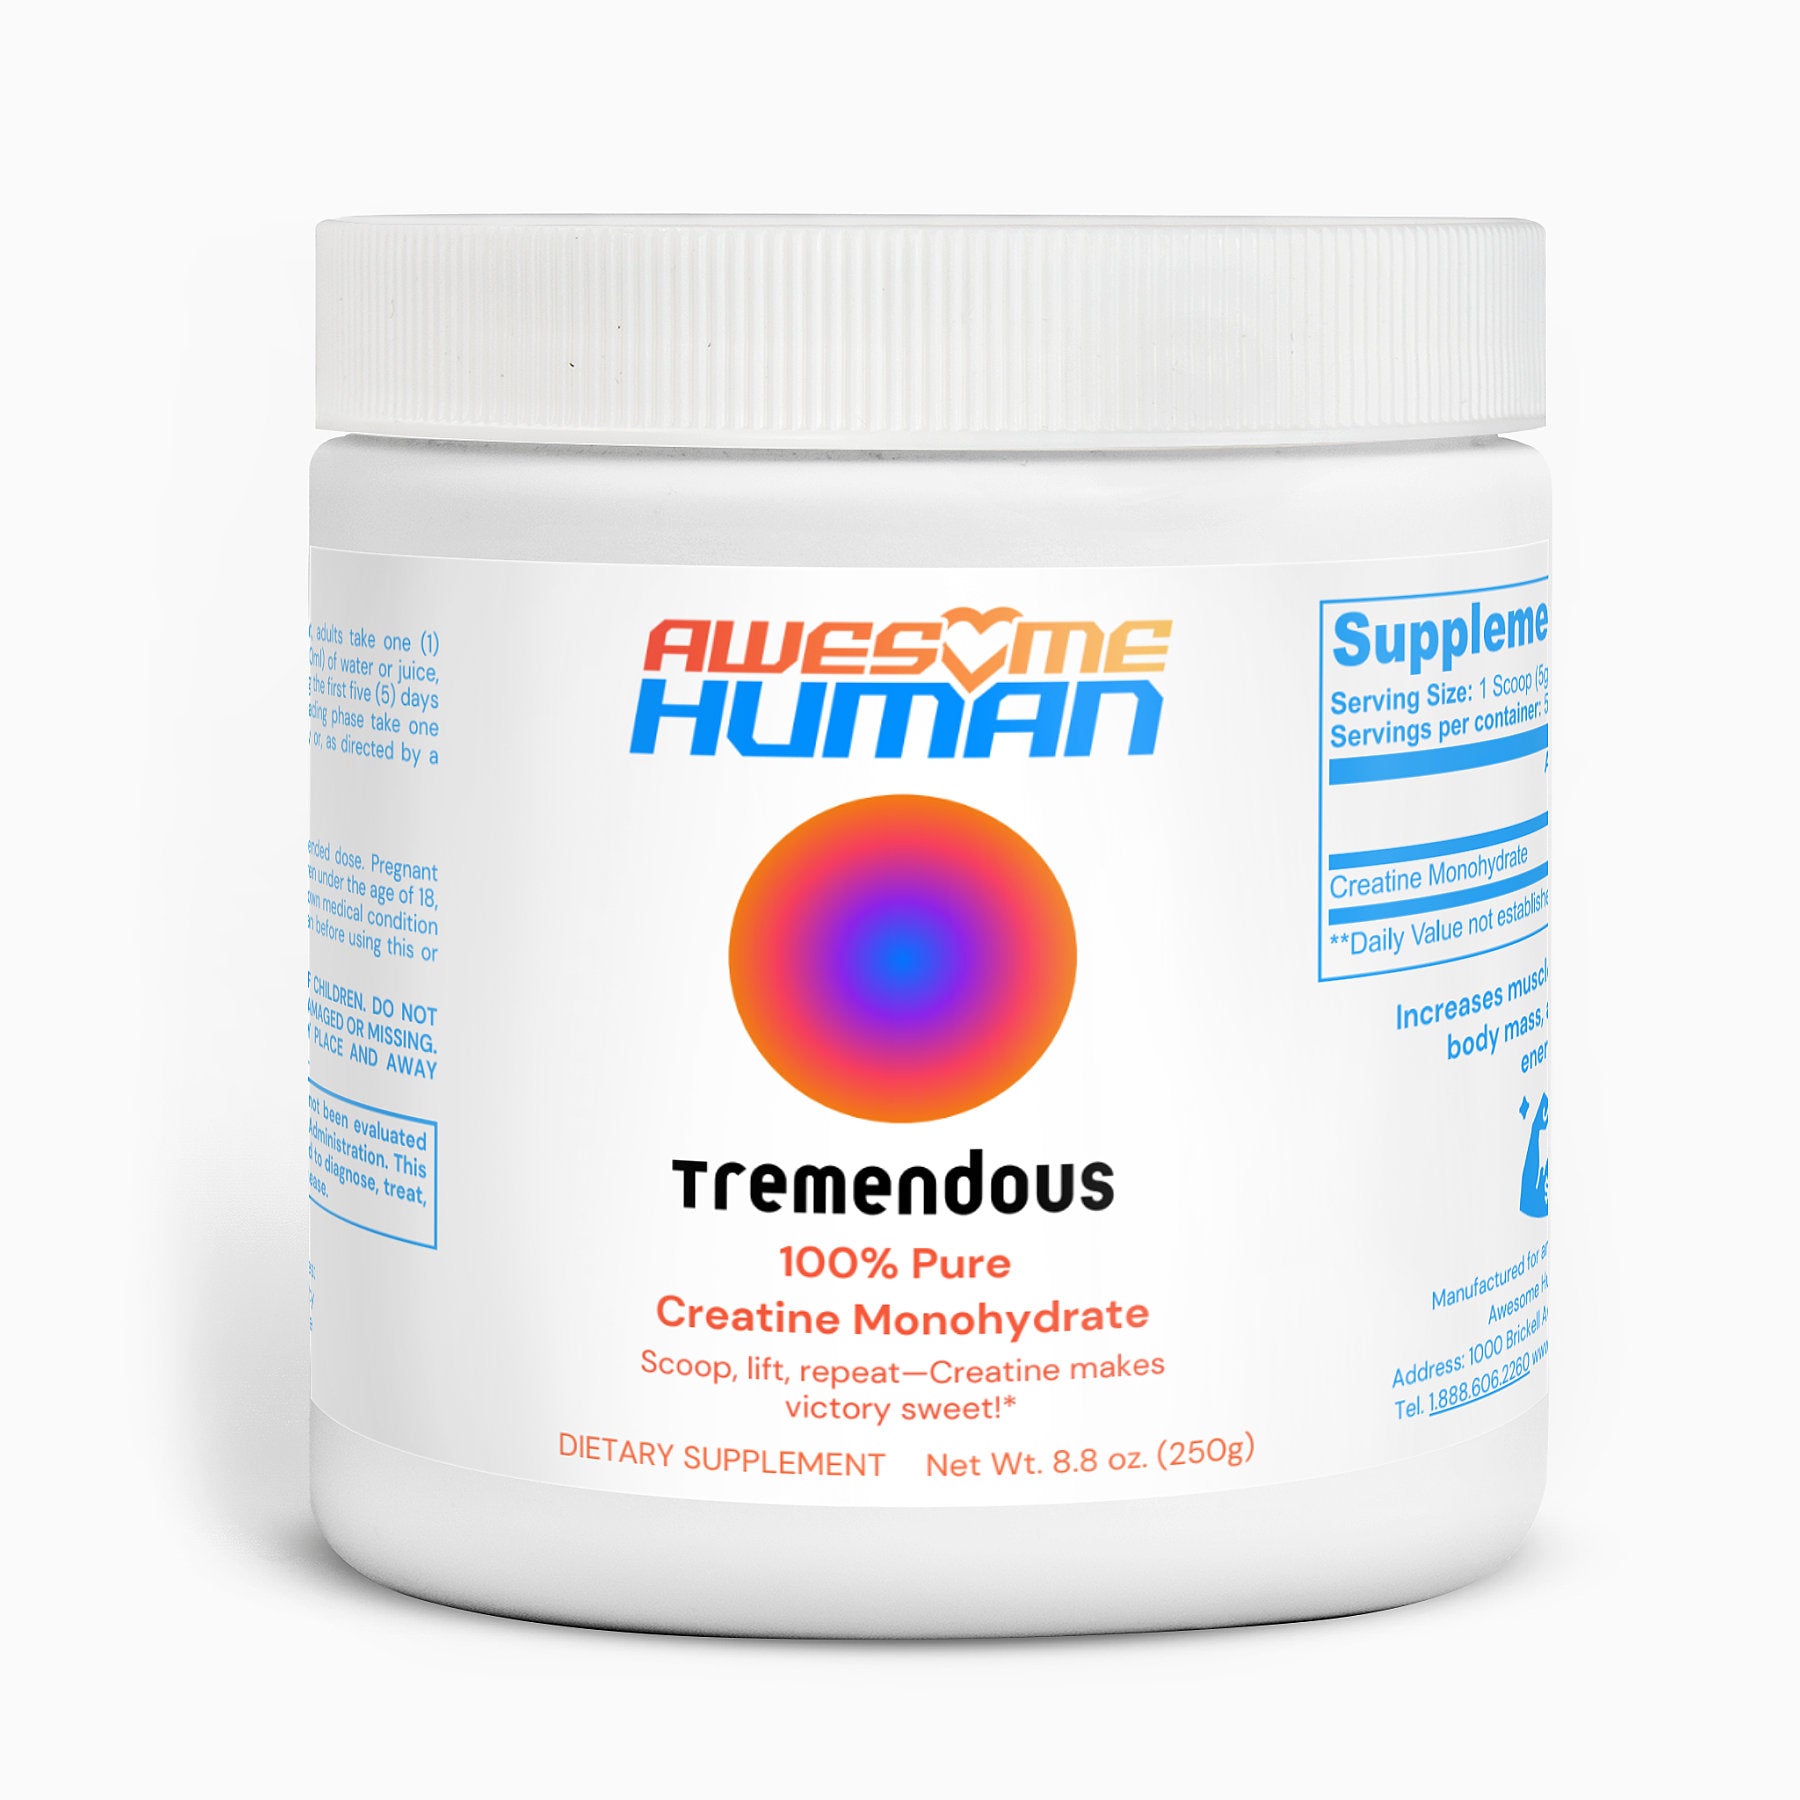 Tremendous | 100% Creatine Monohydrate